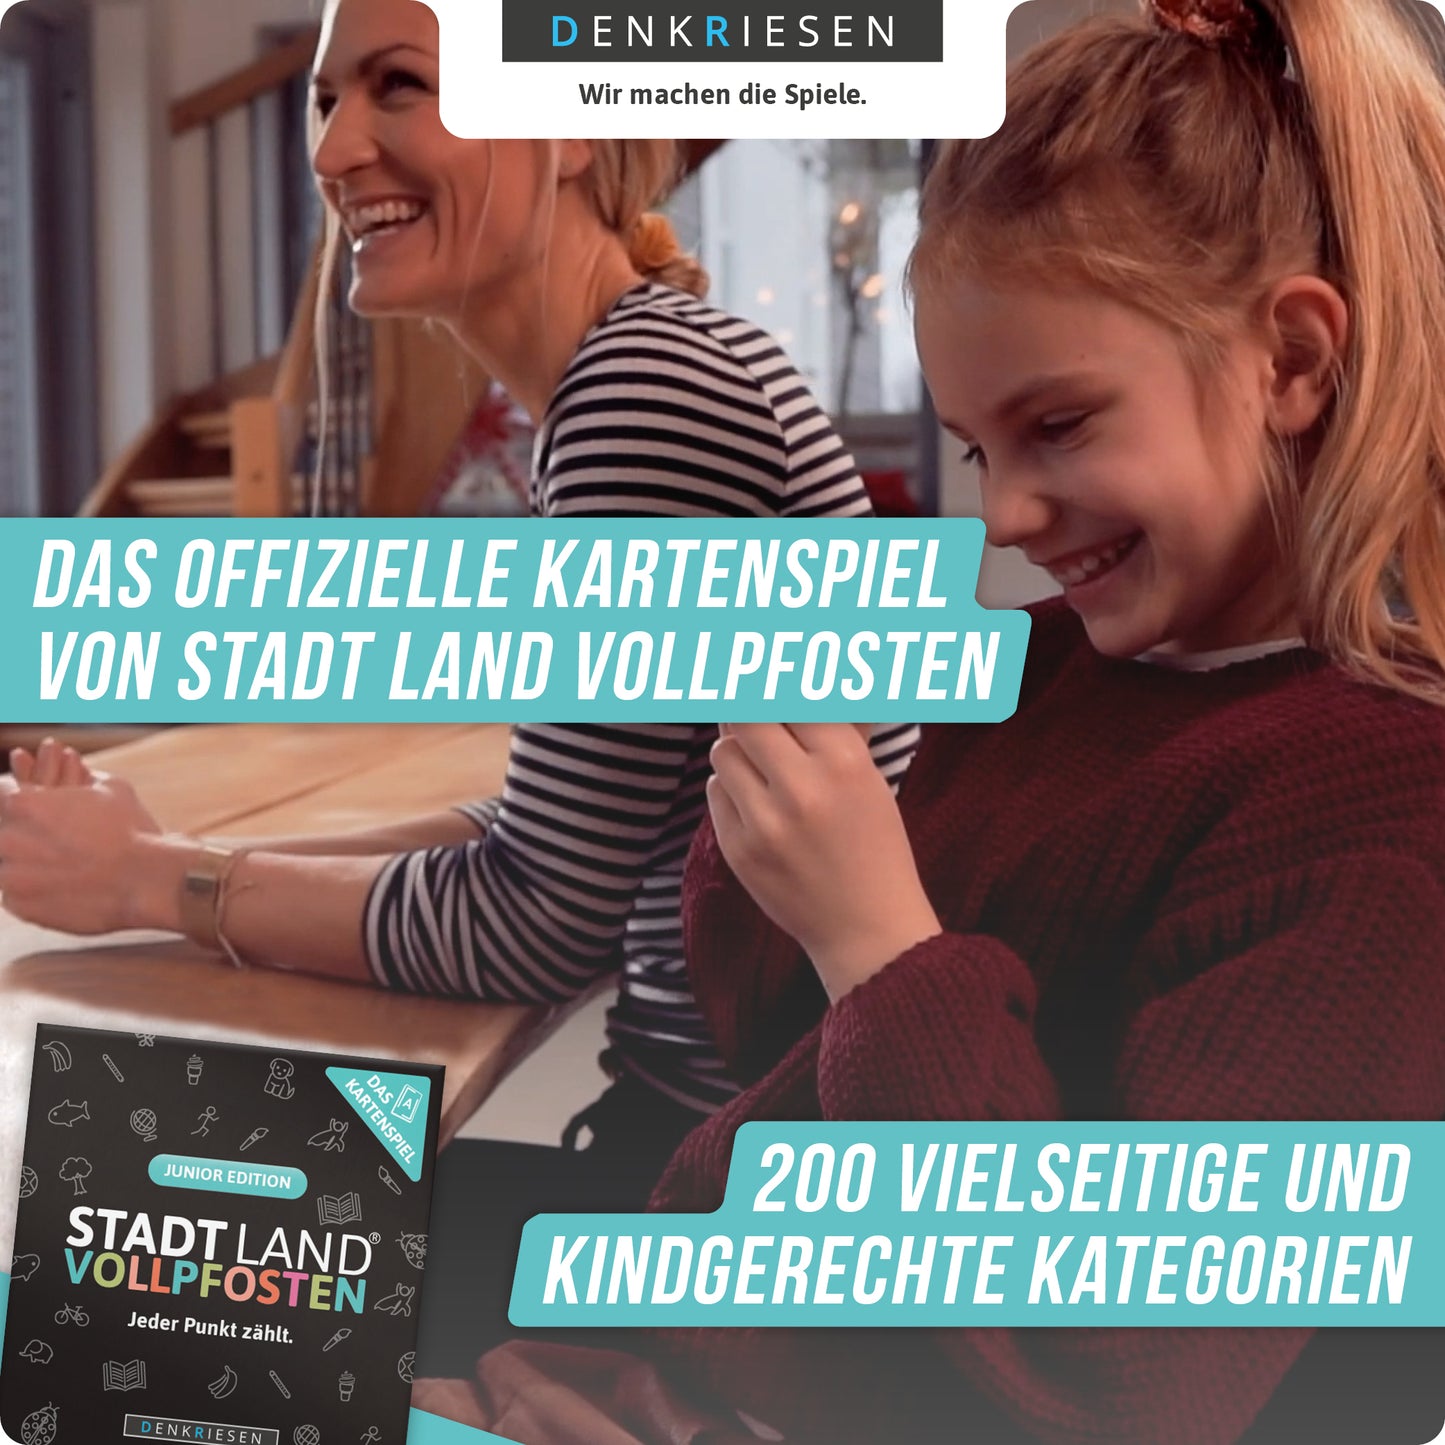 Stadt Land Vollpfosten - Junior Edition